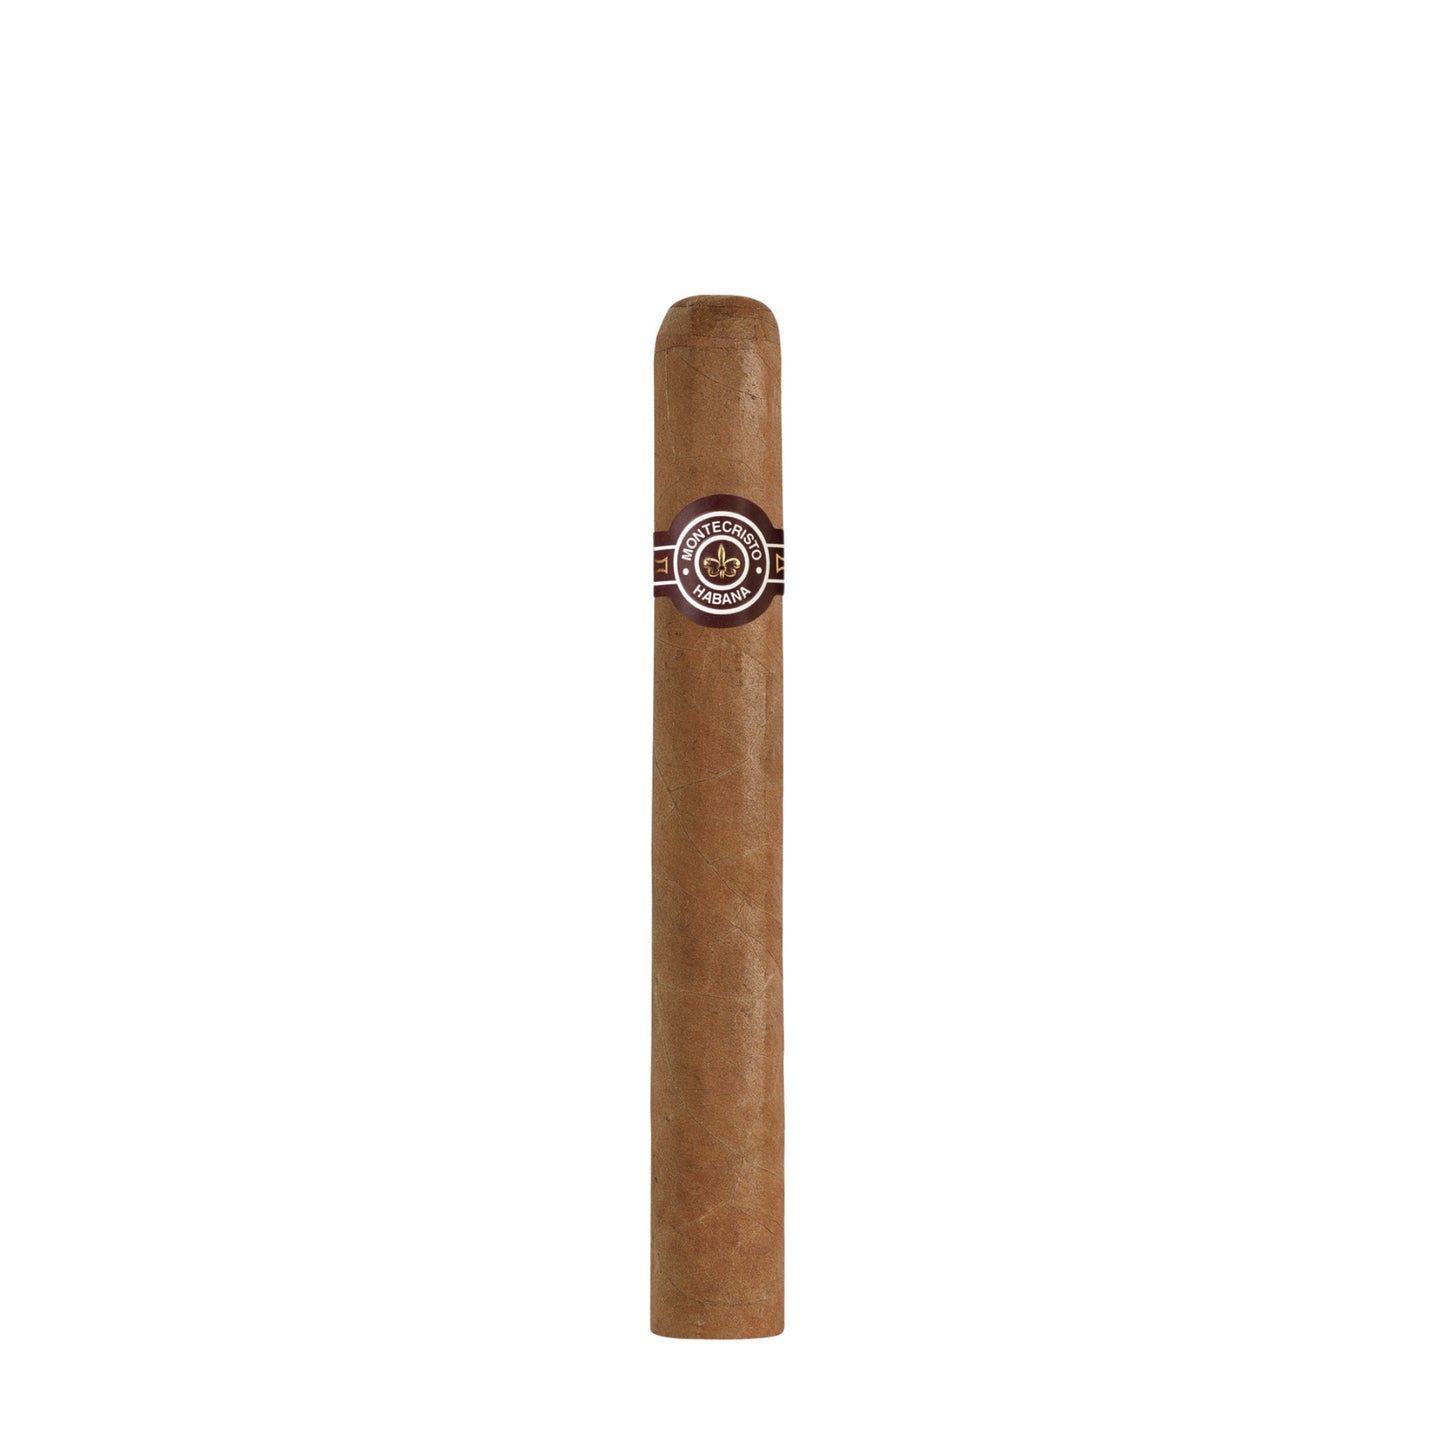 Montecristo No.4 cigar